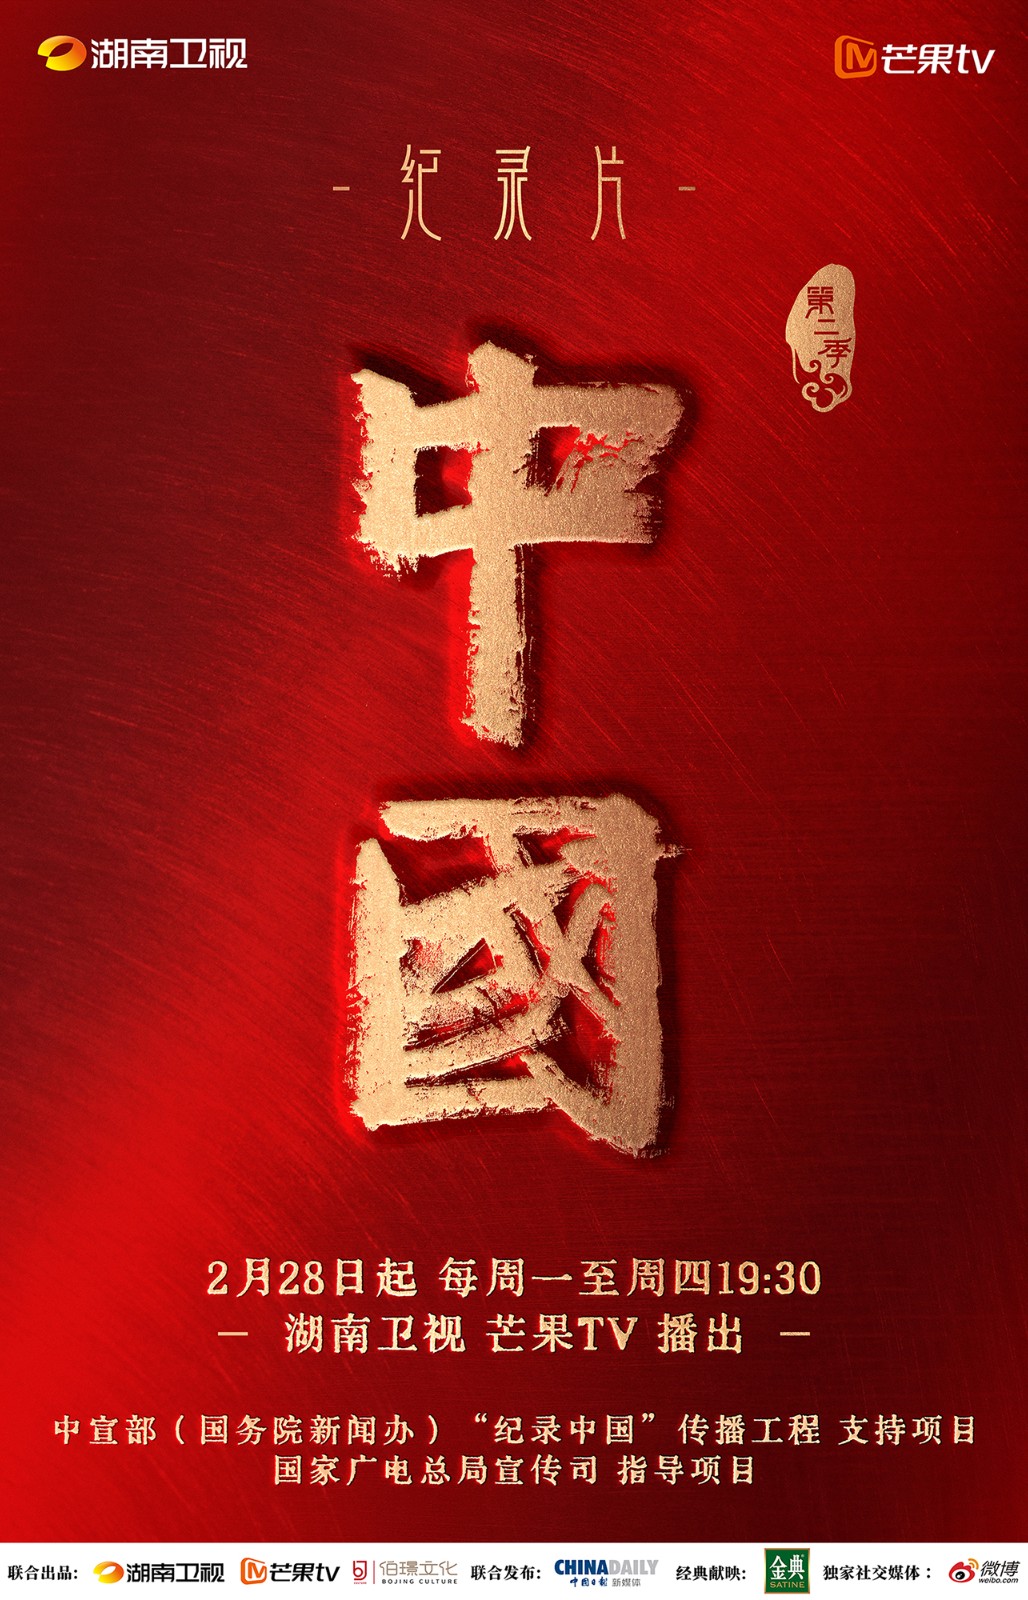 纪录片《中国》第二季之《市井》：激活“市井文化”里的中国精神基因